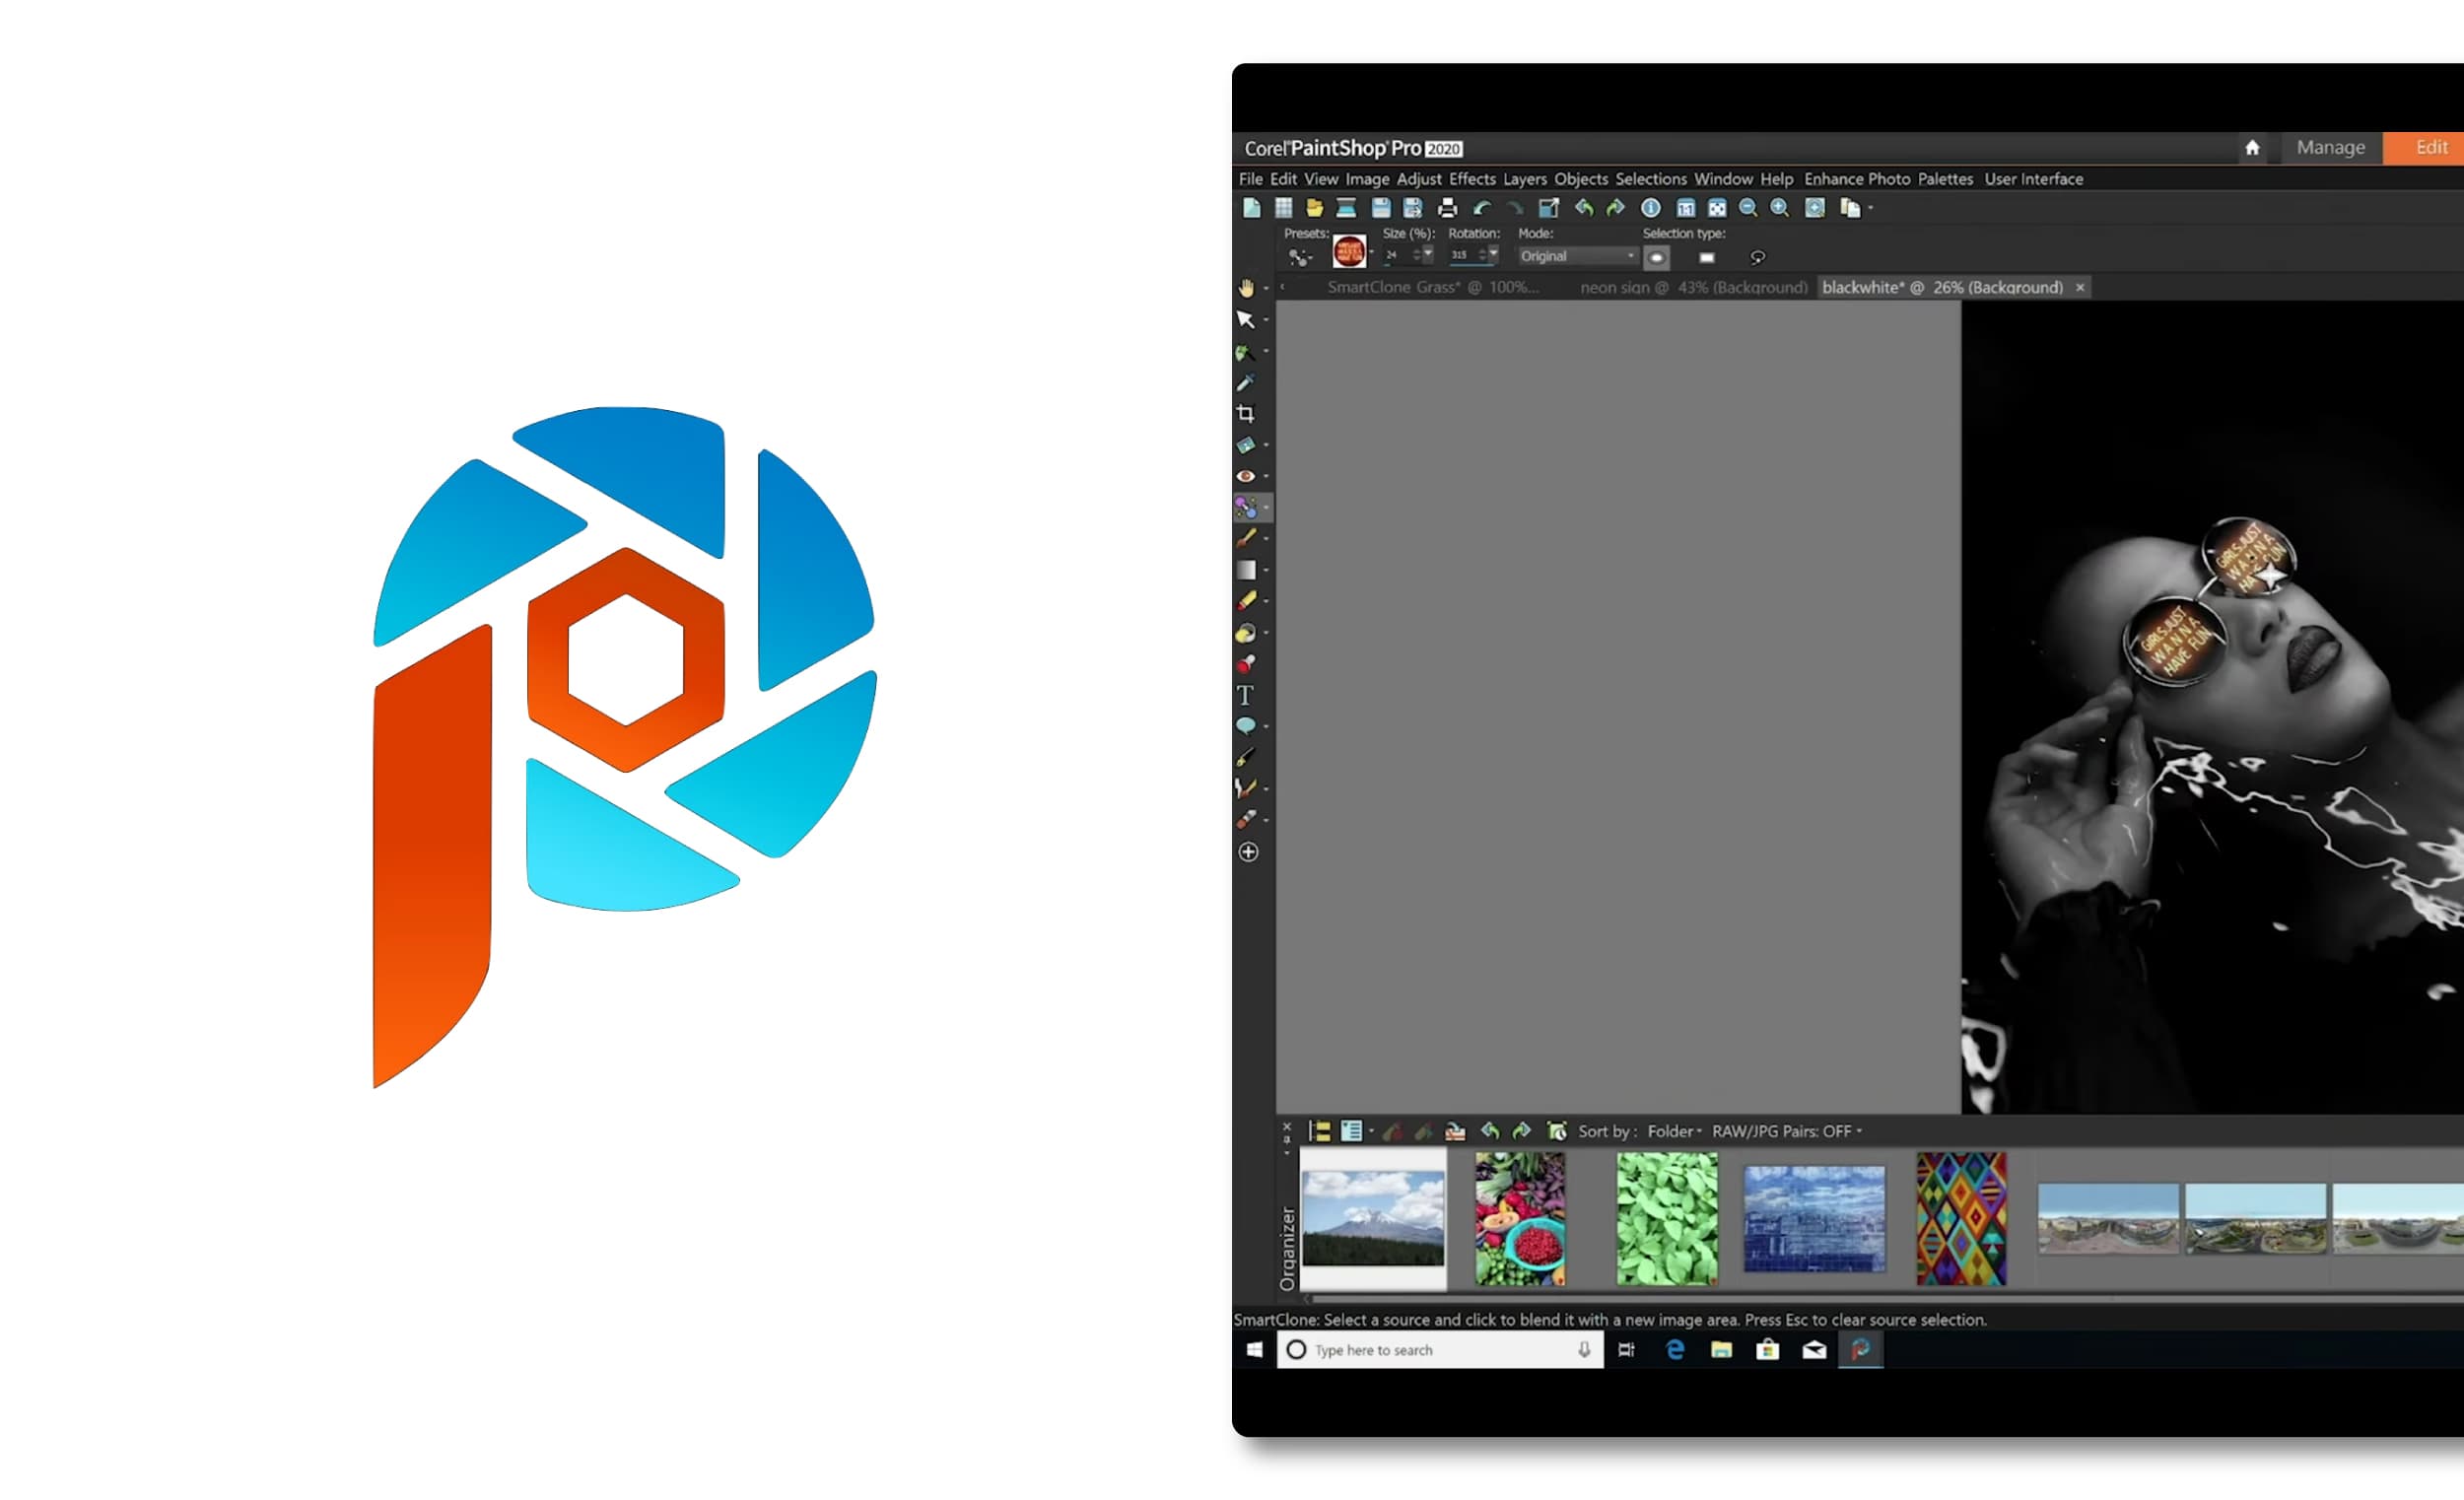 Corel Paintshop 2023 Pro Ultimate 25.2.0.58 instal